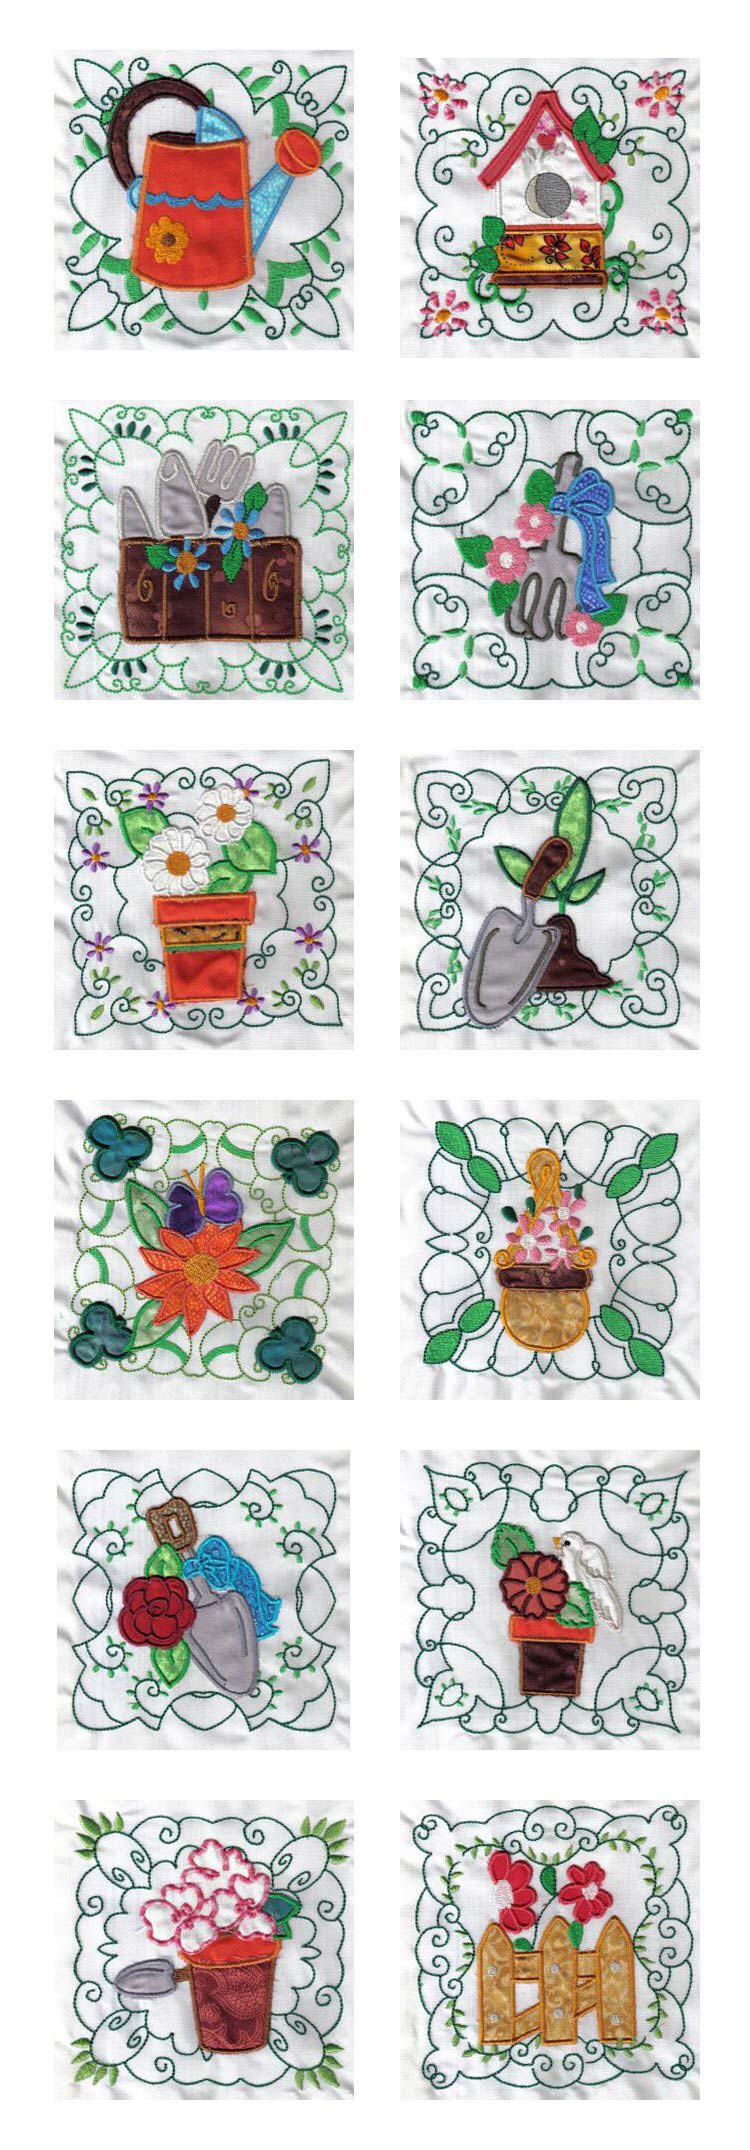 Applique Garden Quilt Blocks Embroidery Machine Design Details